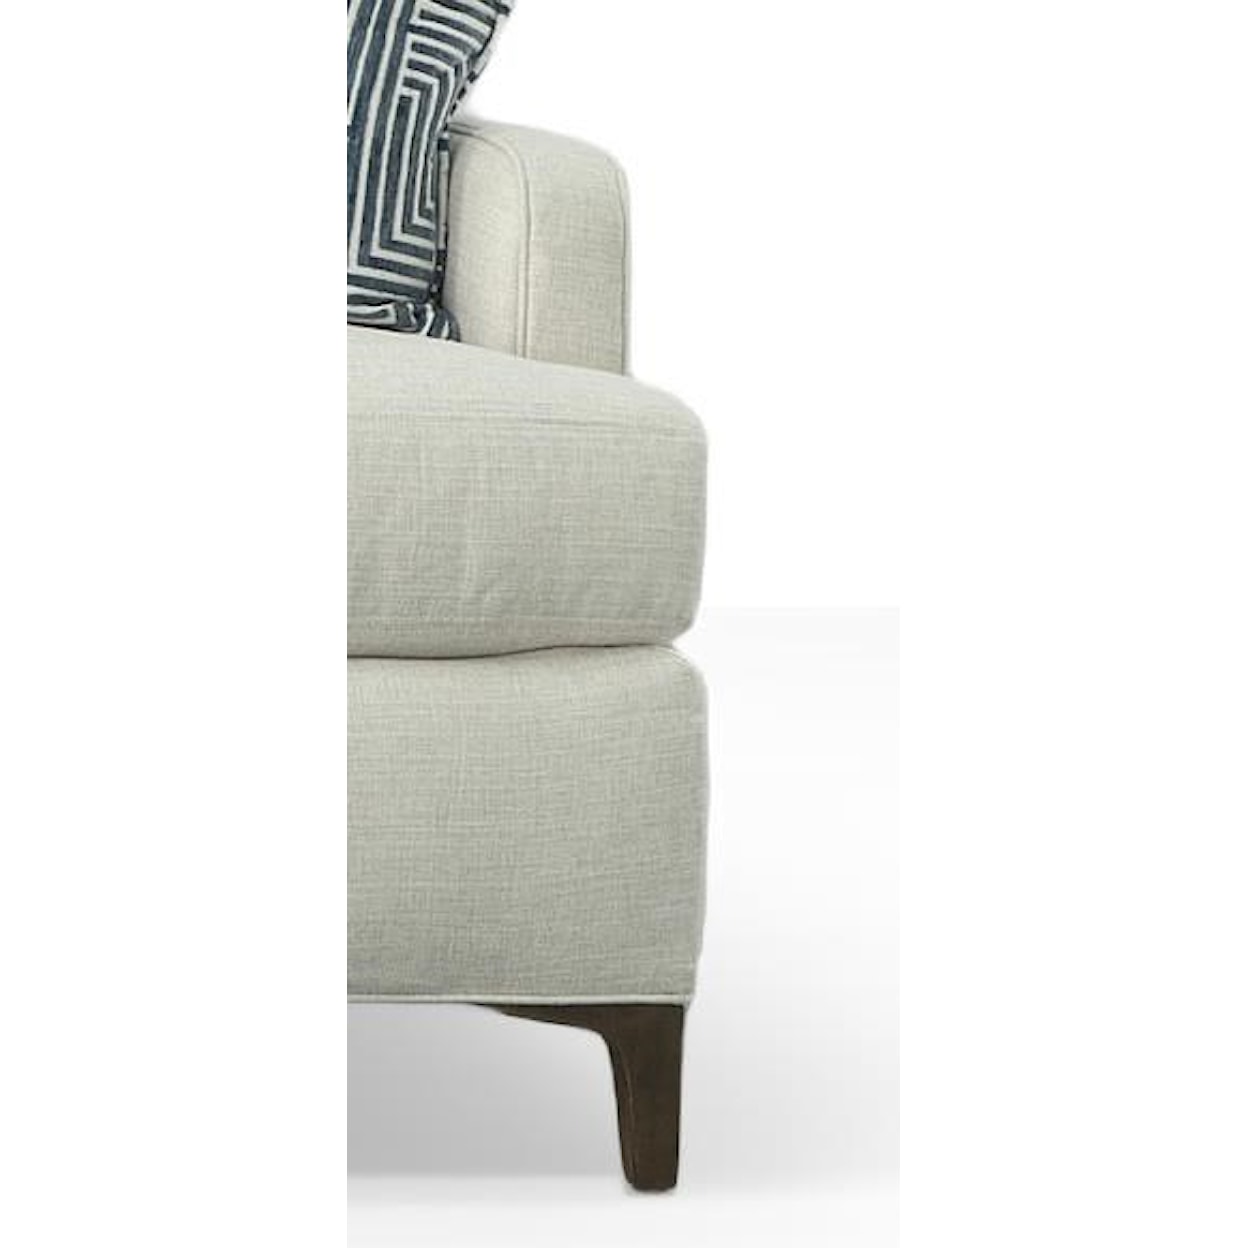 Fairfield Remy-Libby Langdon 3 Cushion Sofa